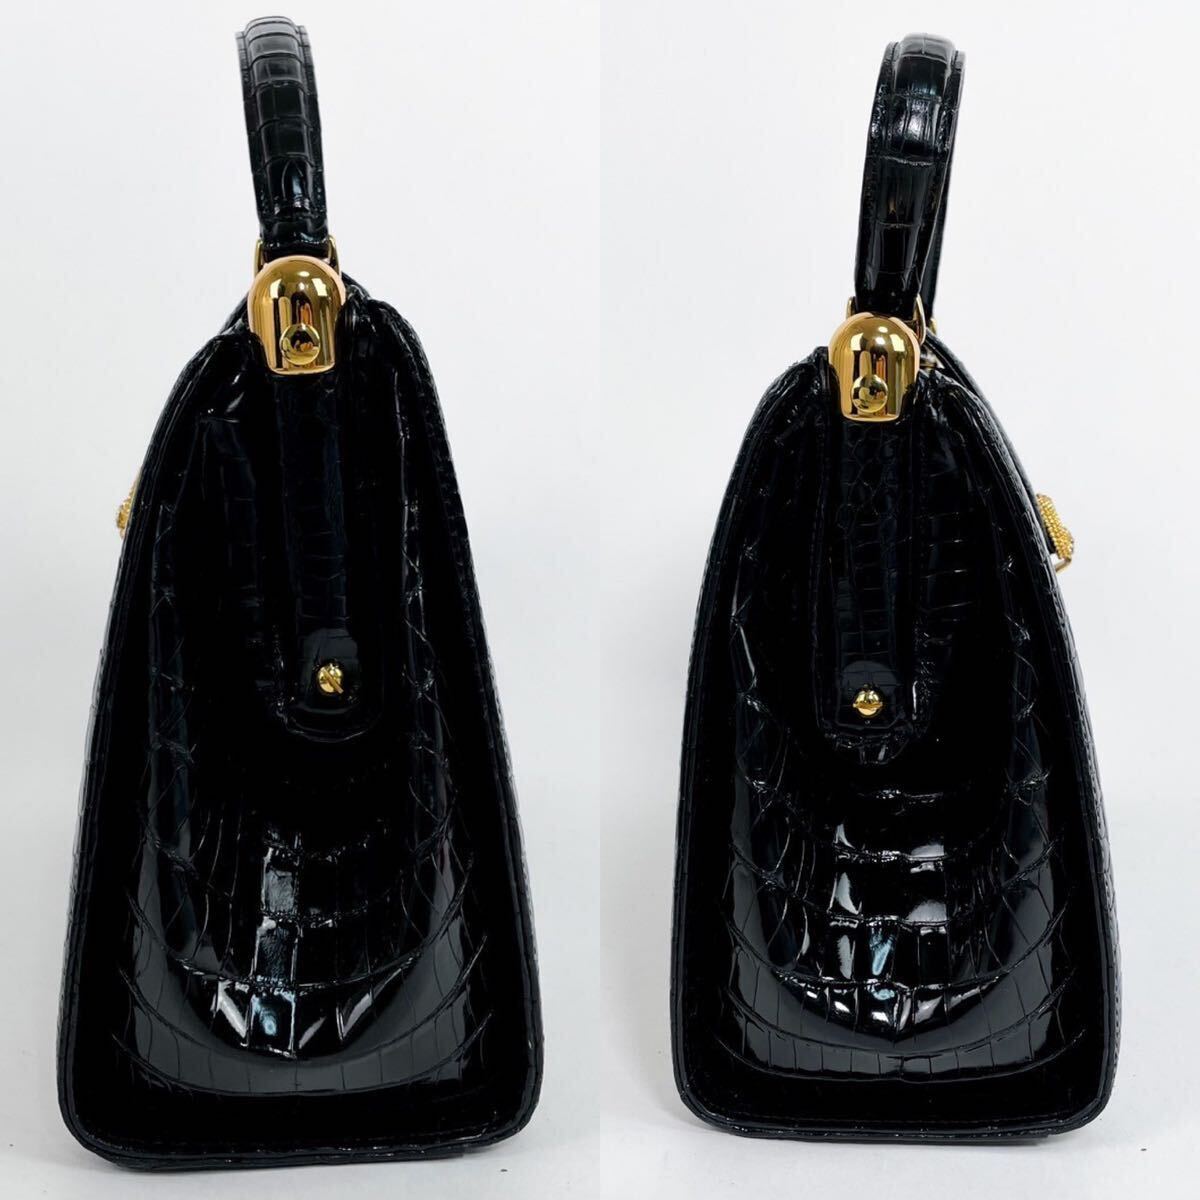  Shinjuku магазин shinjukuya сияющий черный koкнига@wani кожа крокодил кожа ручная сумочка ручная сумка * сумка черный чёрный Gold металлические принадлежности 